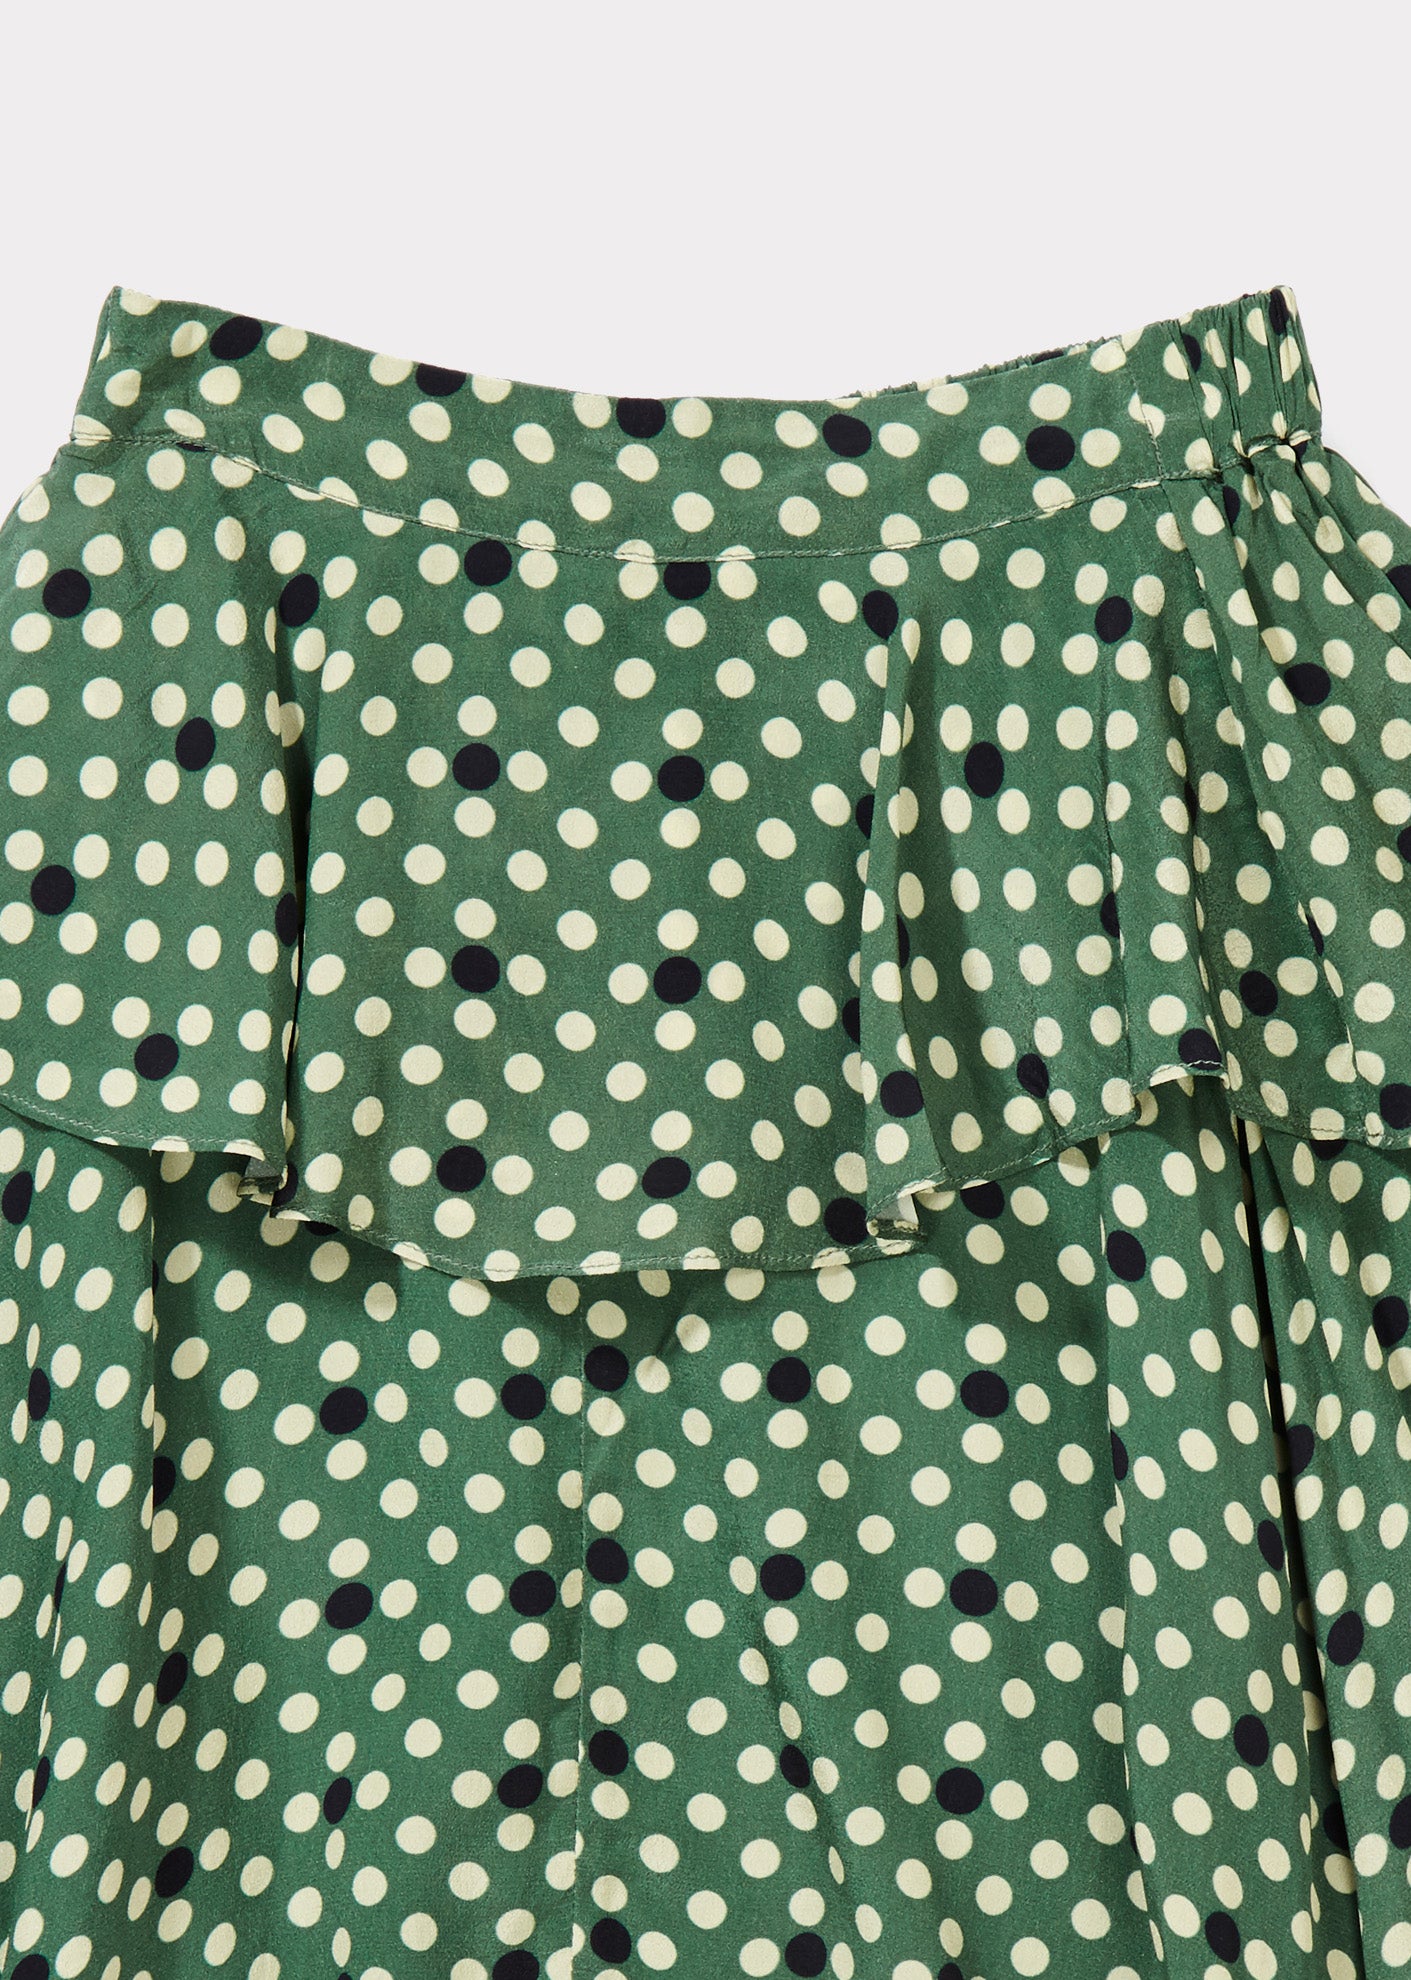 Girls Green Dots Skirt